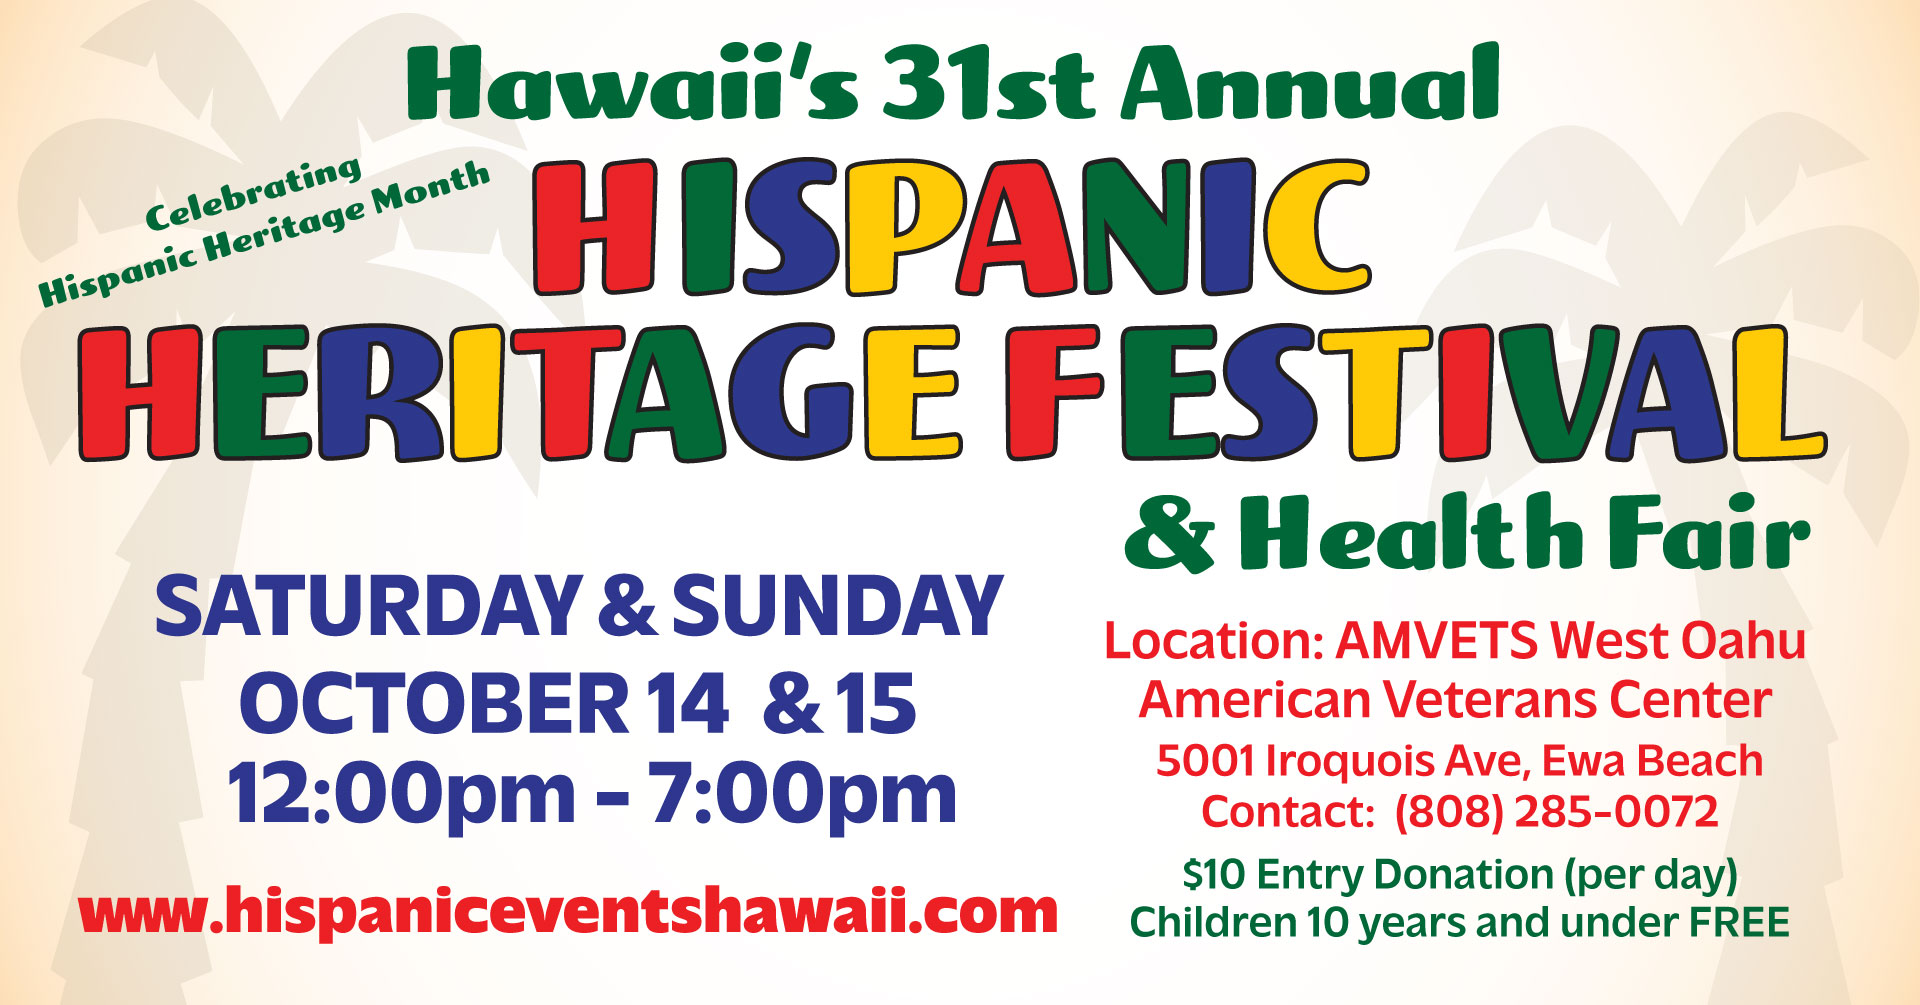 Hawaii Hispanic Heritage Festivals and Events Celebrating Hispanic